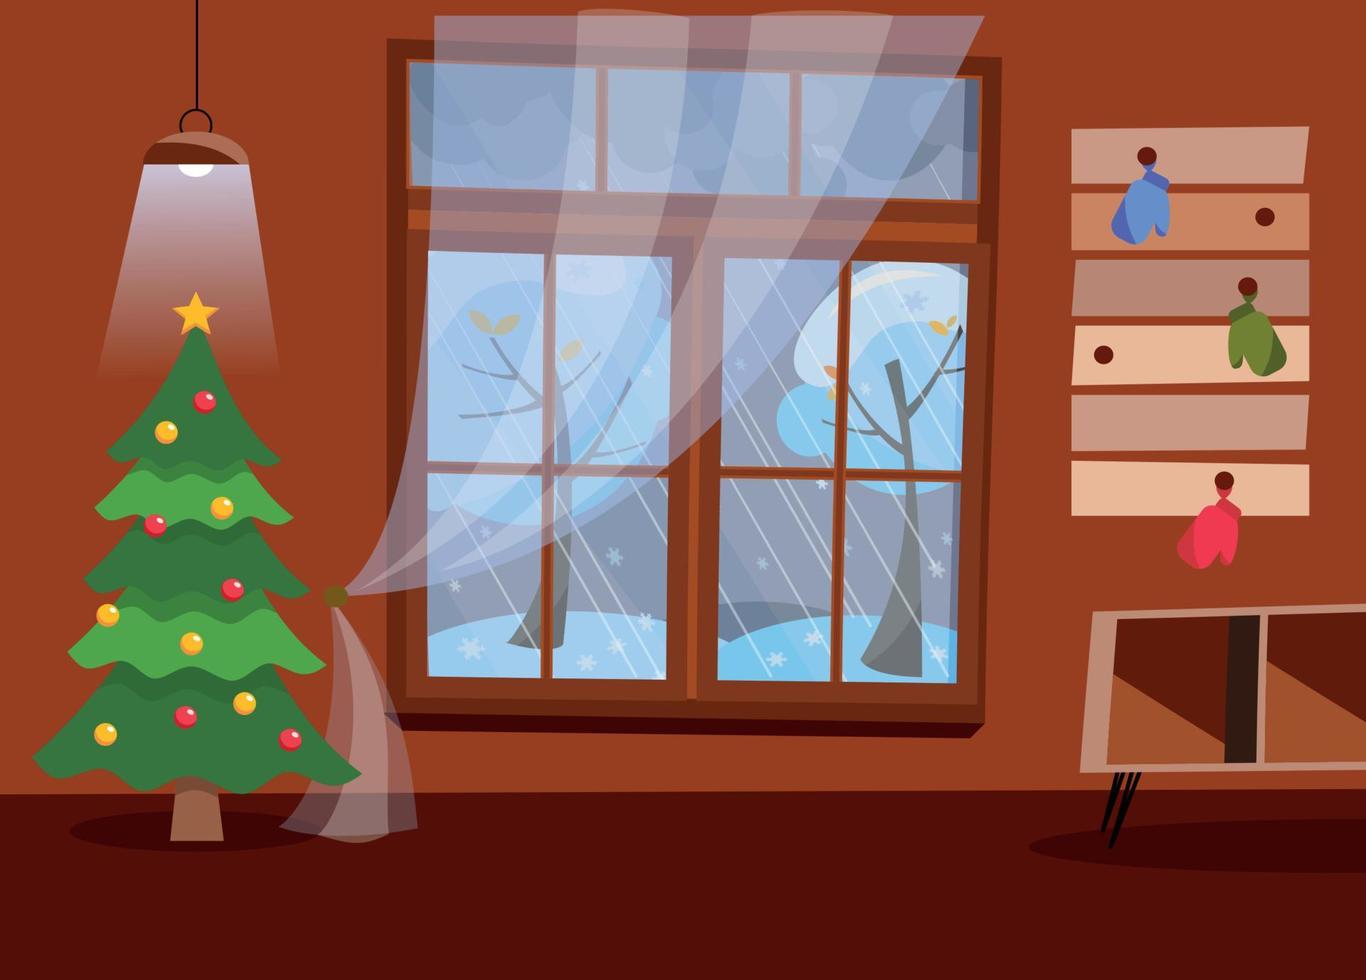 Das Innere des Flurs in Brauntönen mit großem Fenster mit Blick auf die Winterlandschaft und schneebedeckte Bäume. im zimmer gibt es tisch, kleiderbügel, fäustlinge, weihnachtsbaum, deckenleuchte. flacher Cartoon-Vektor vektor